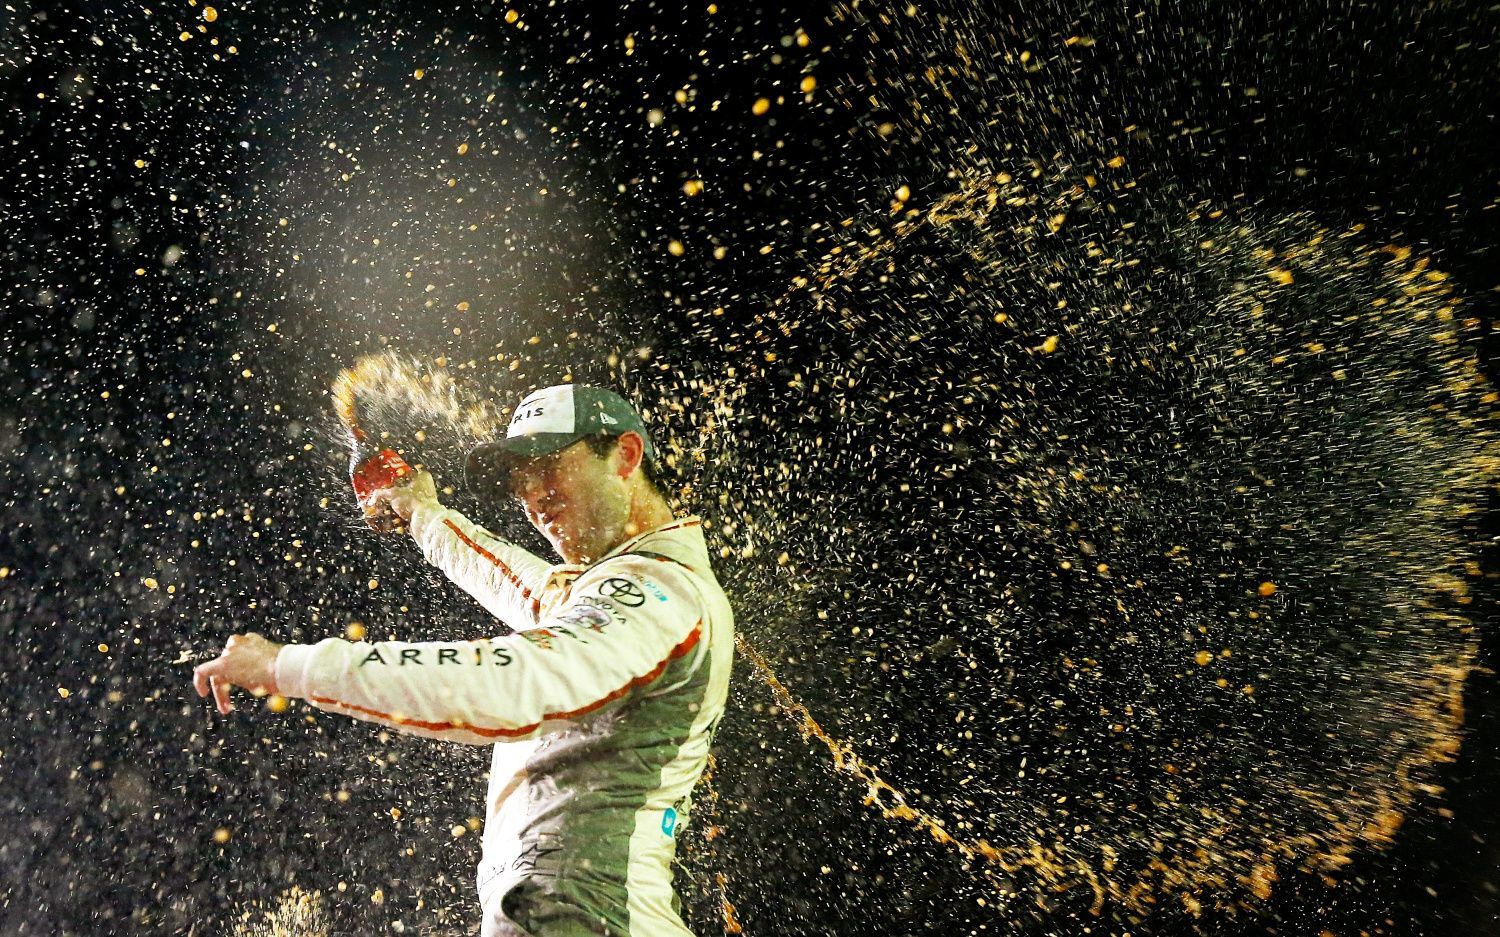 NASCAR Xfinity Series: Daniel Suárez